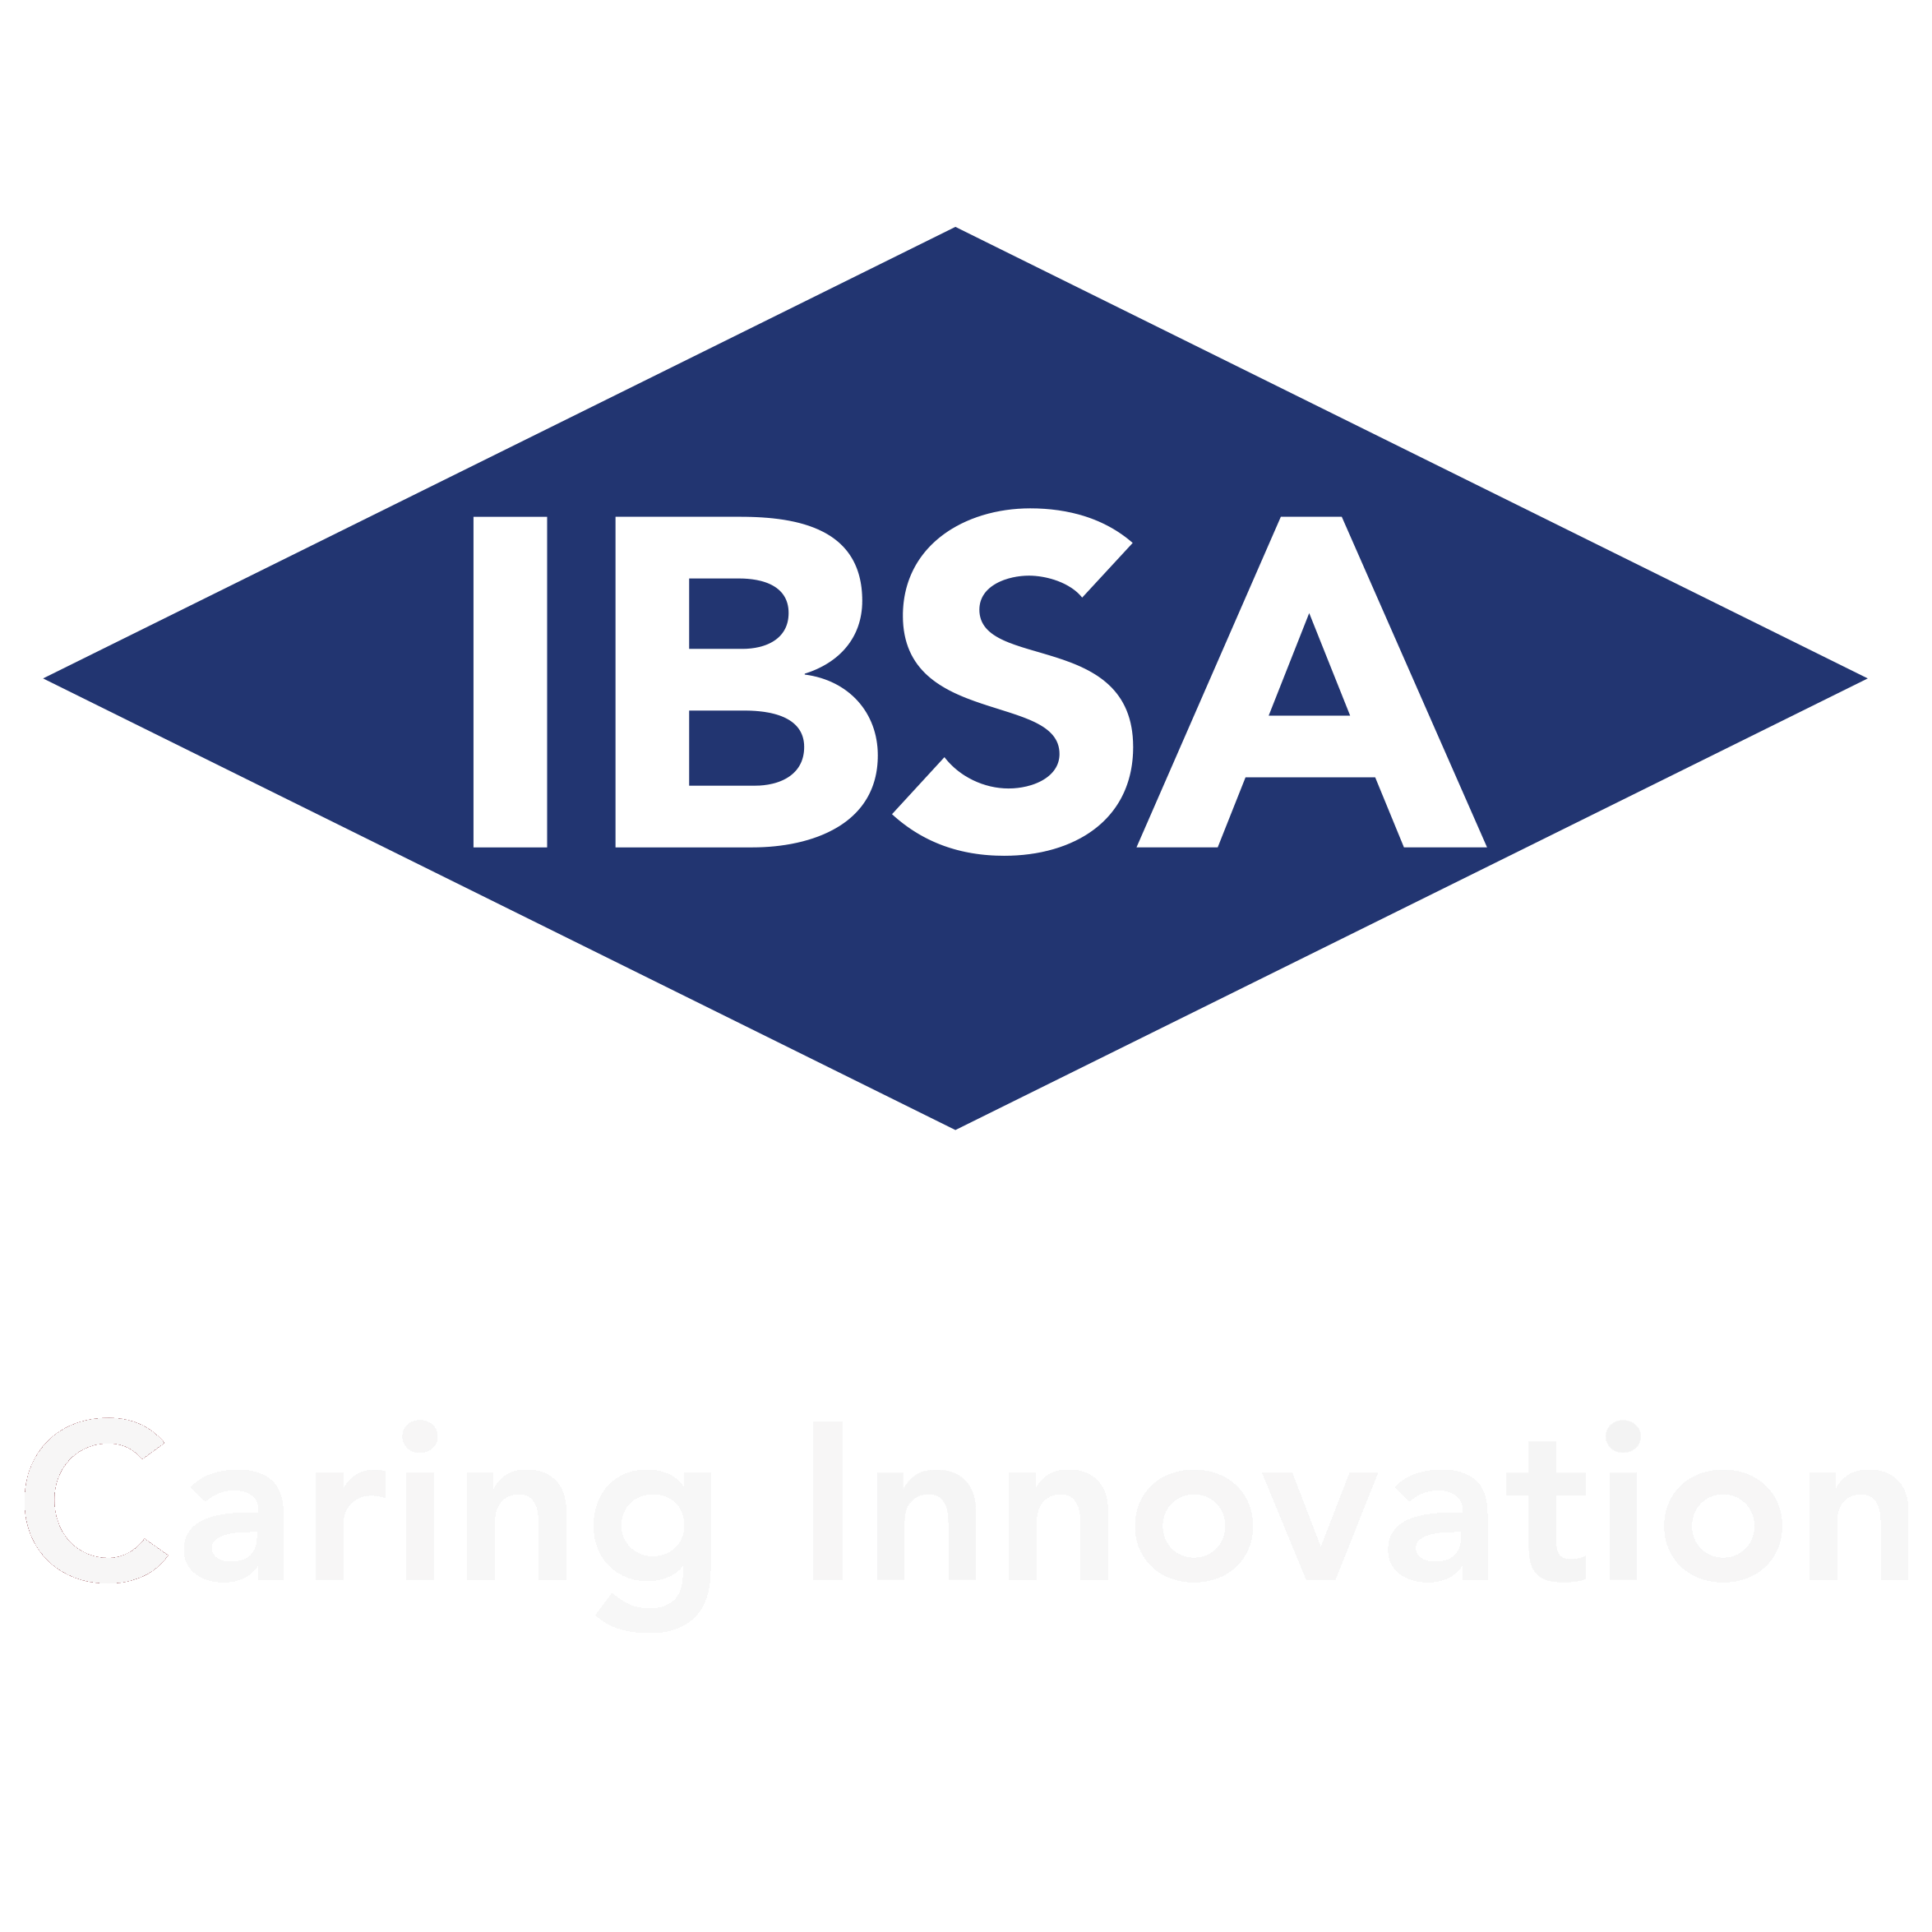 IBSA Czech Republic